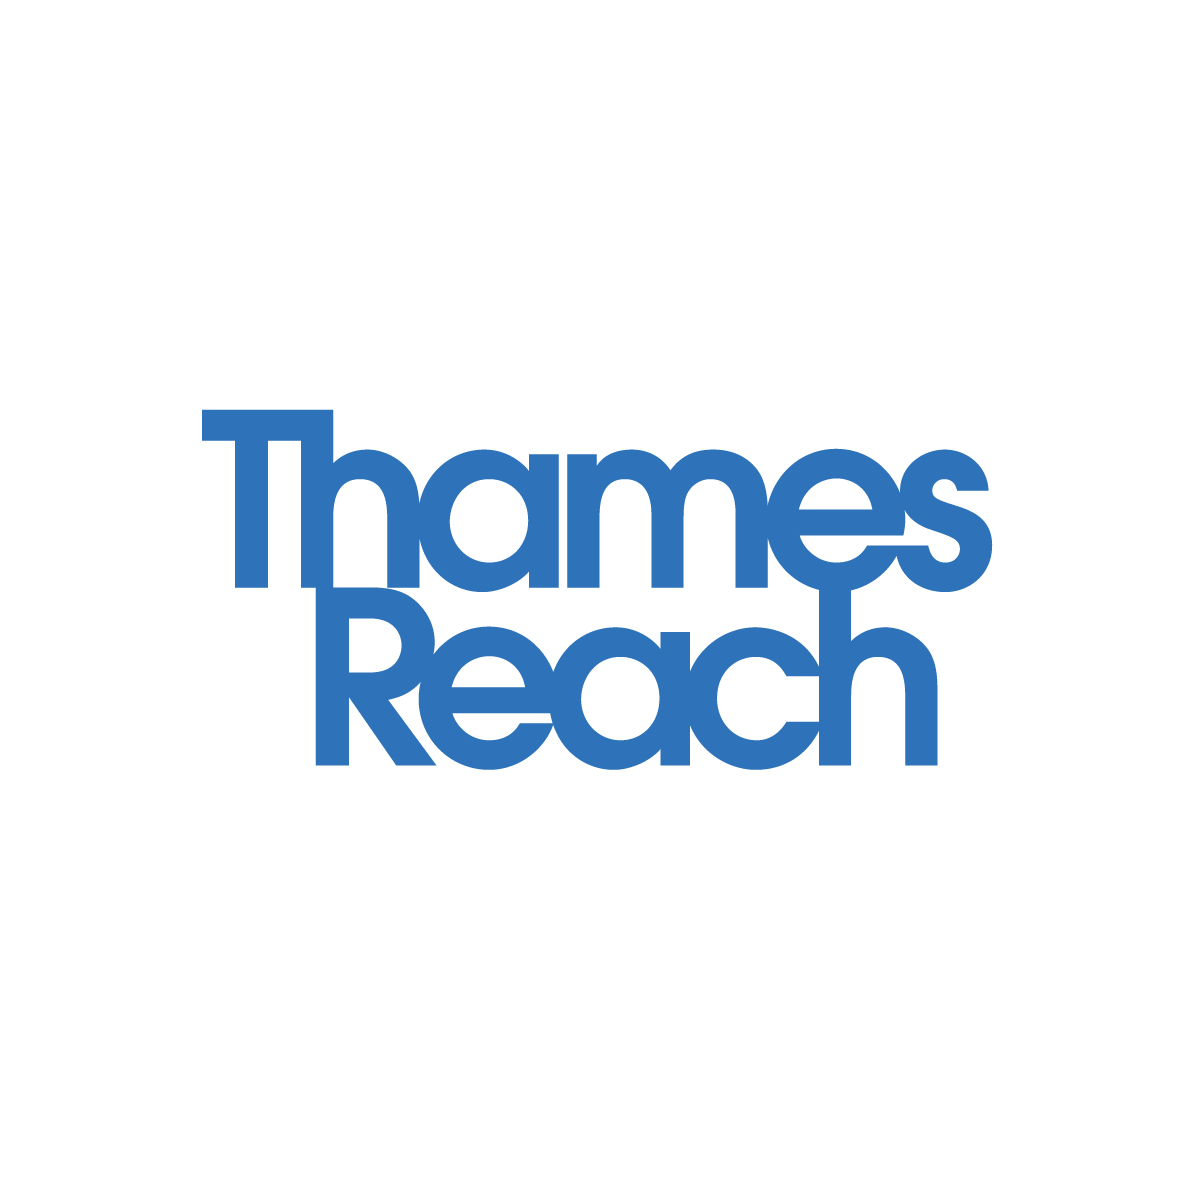 Thames Reach